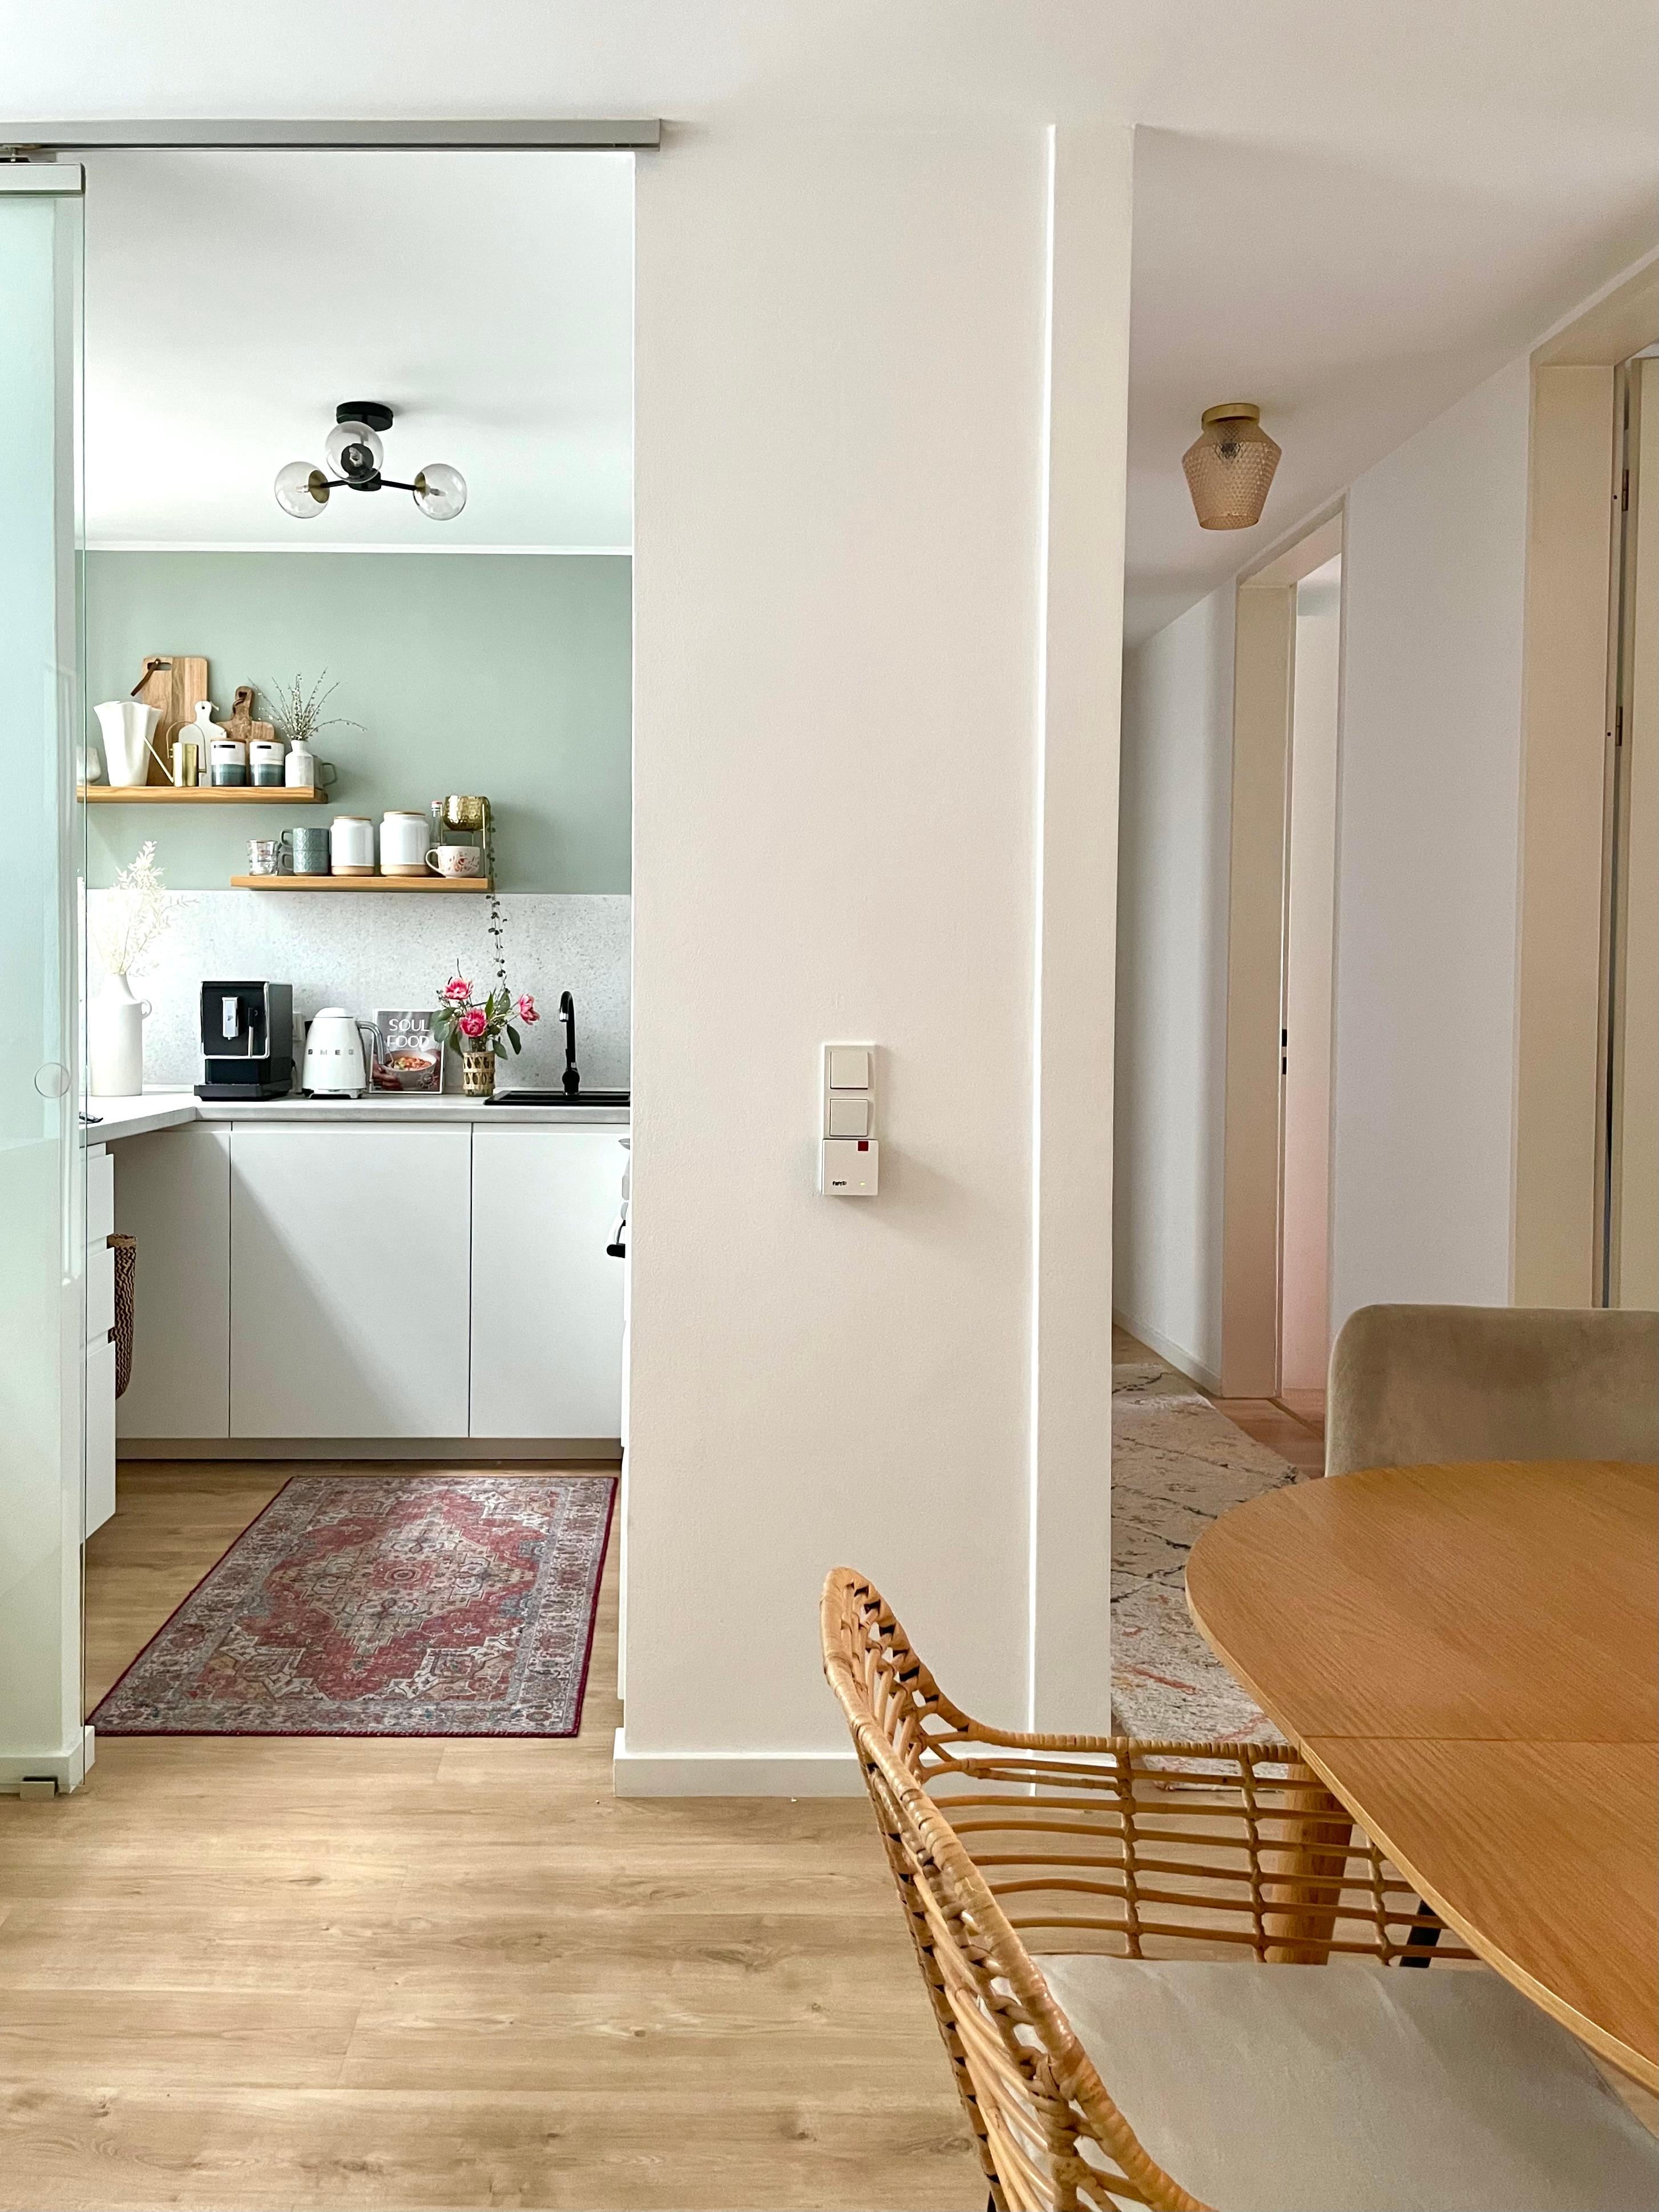 Kurz zu unserer Küche: Quadratisch, praktisch, gut 🤓 Das Positive an kleinen Küchen? Man kommt überall schnell ran und muss nicht so viel putzen 😂 #kleineküche #flur